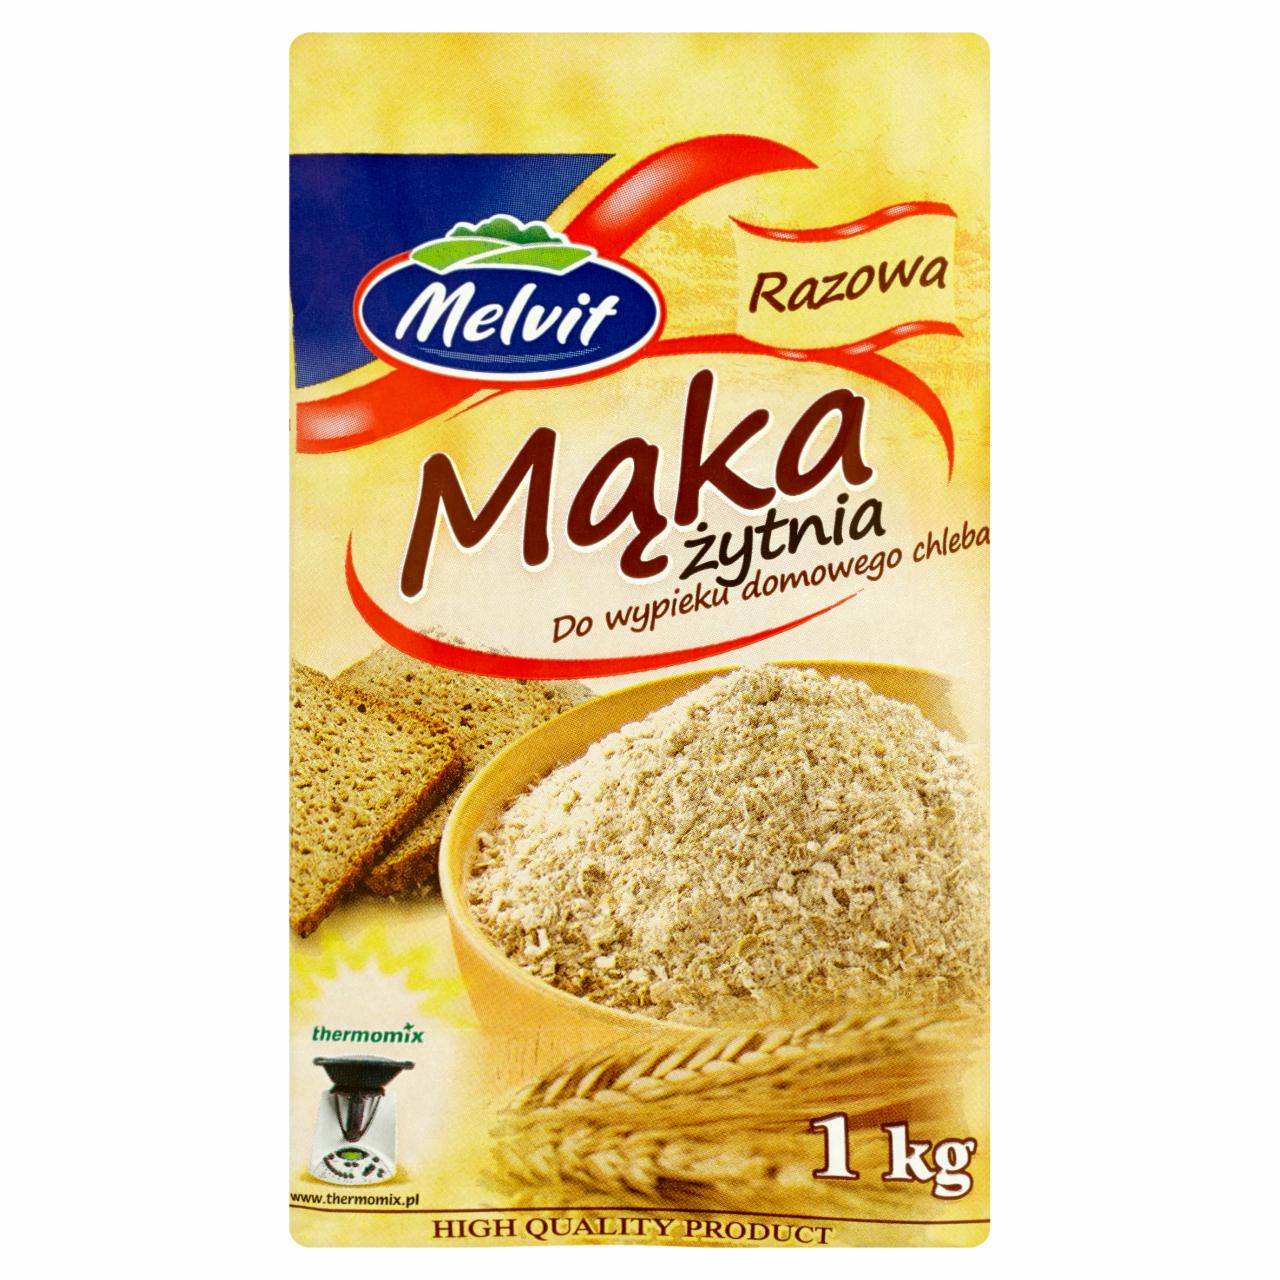 Zdjęcia - Melvit Mąka żytnia razowa do wypieku domowego chleba 1 kg